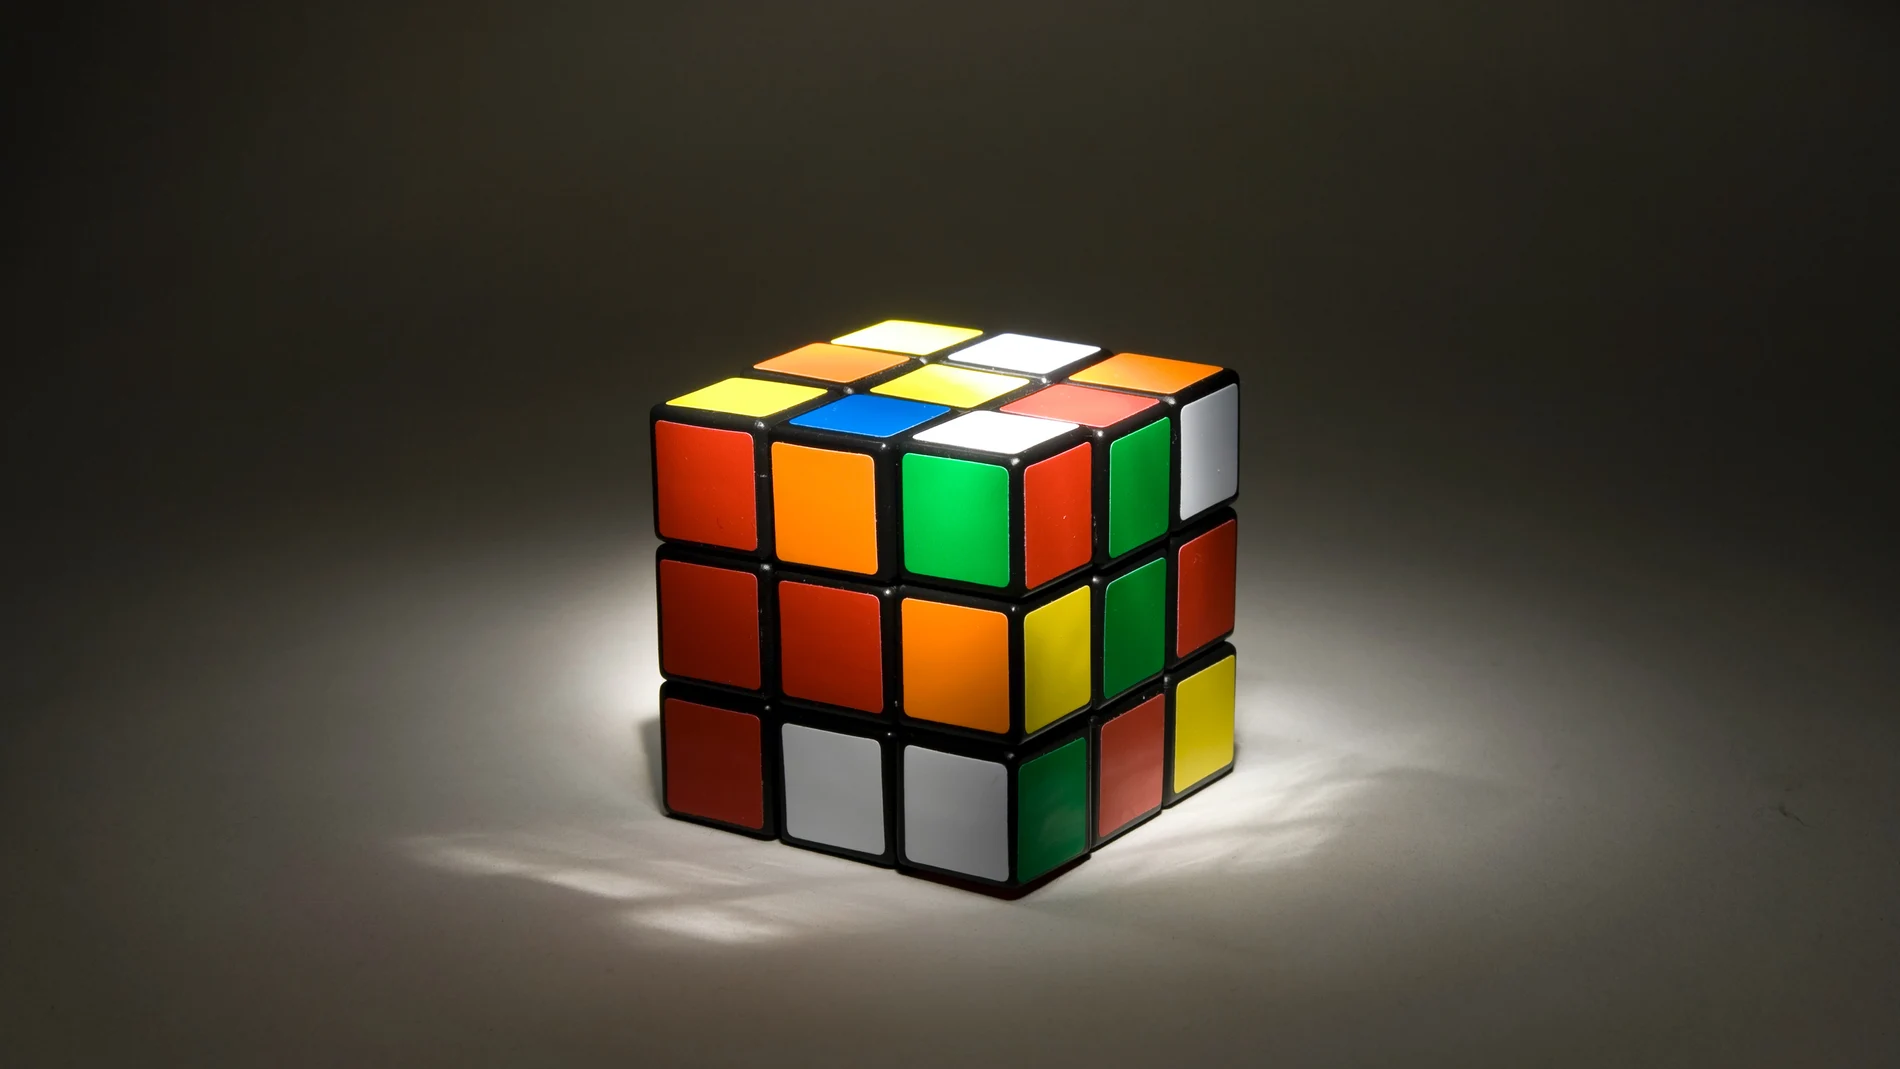 El cubo rubik vuelve a estar de moda: así se resuelve uno de los juegos más